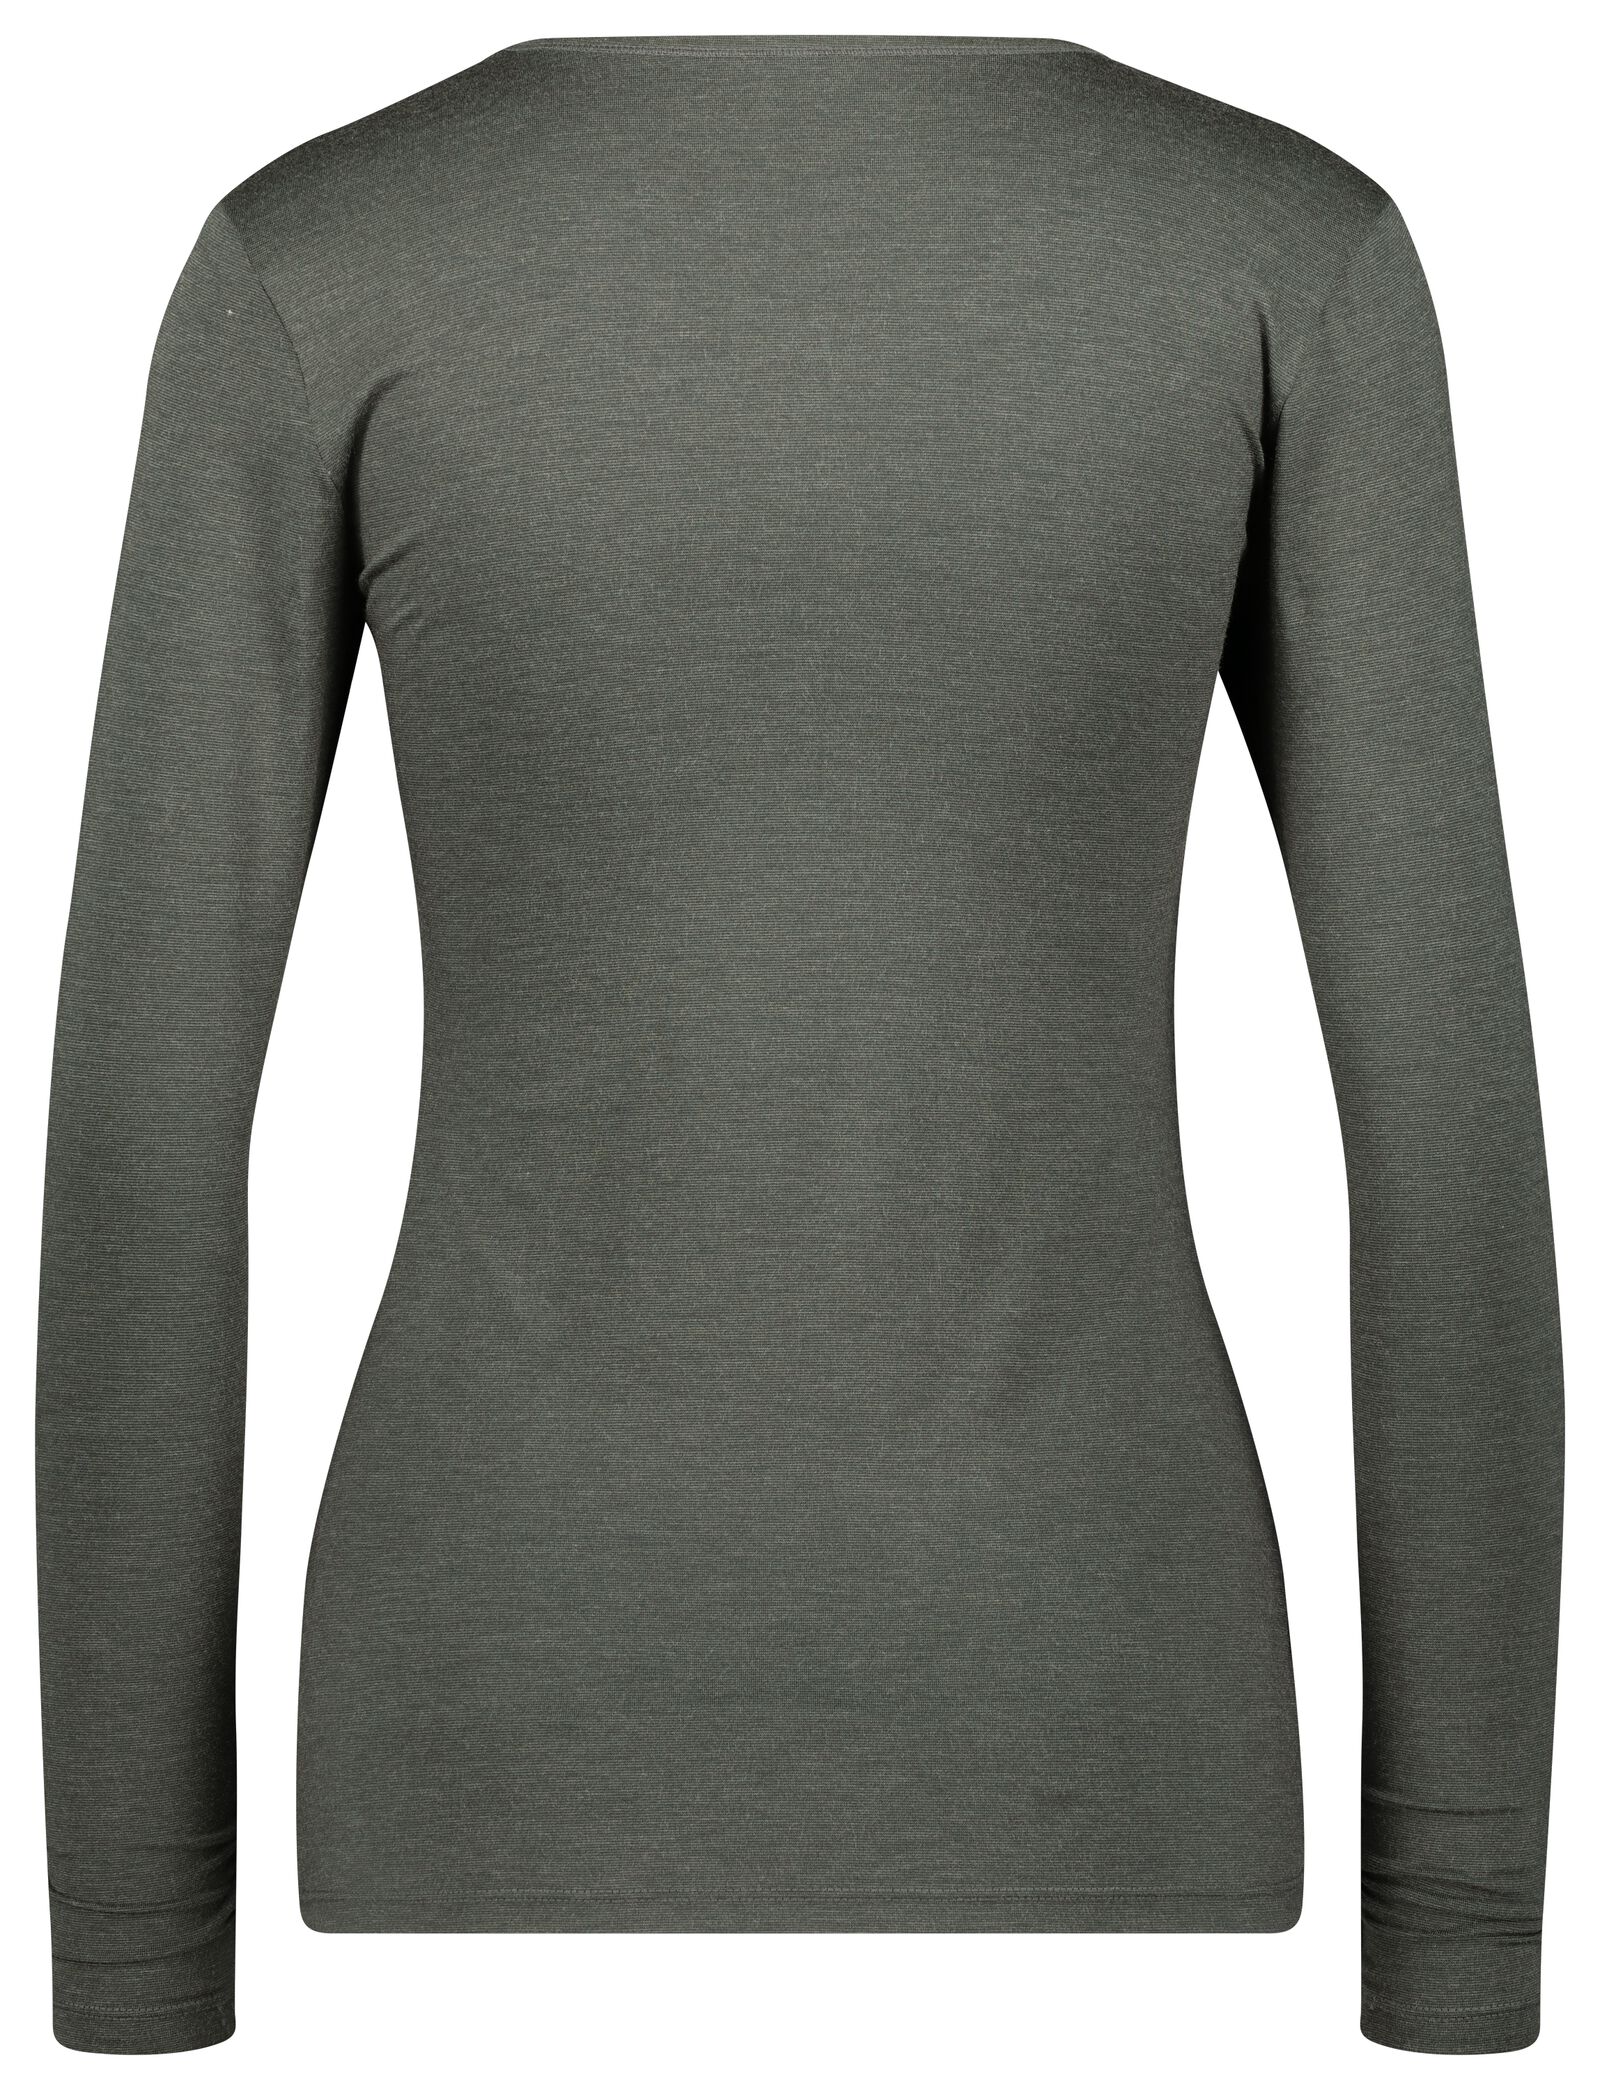 t-shirt thermique femme gris chiné L - 19656943 - HEMA